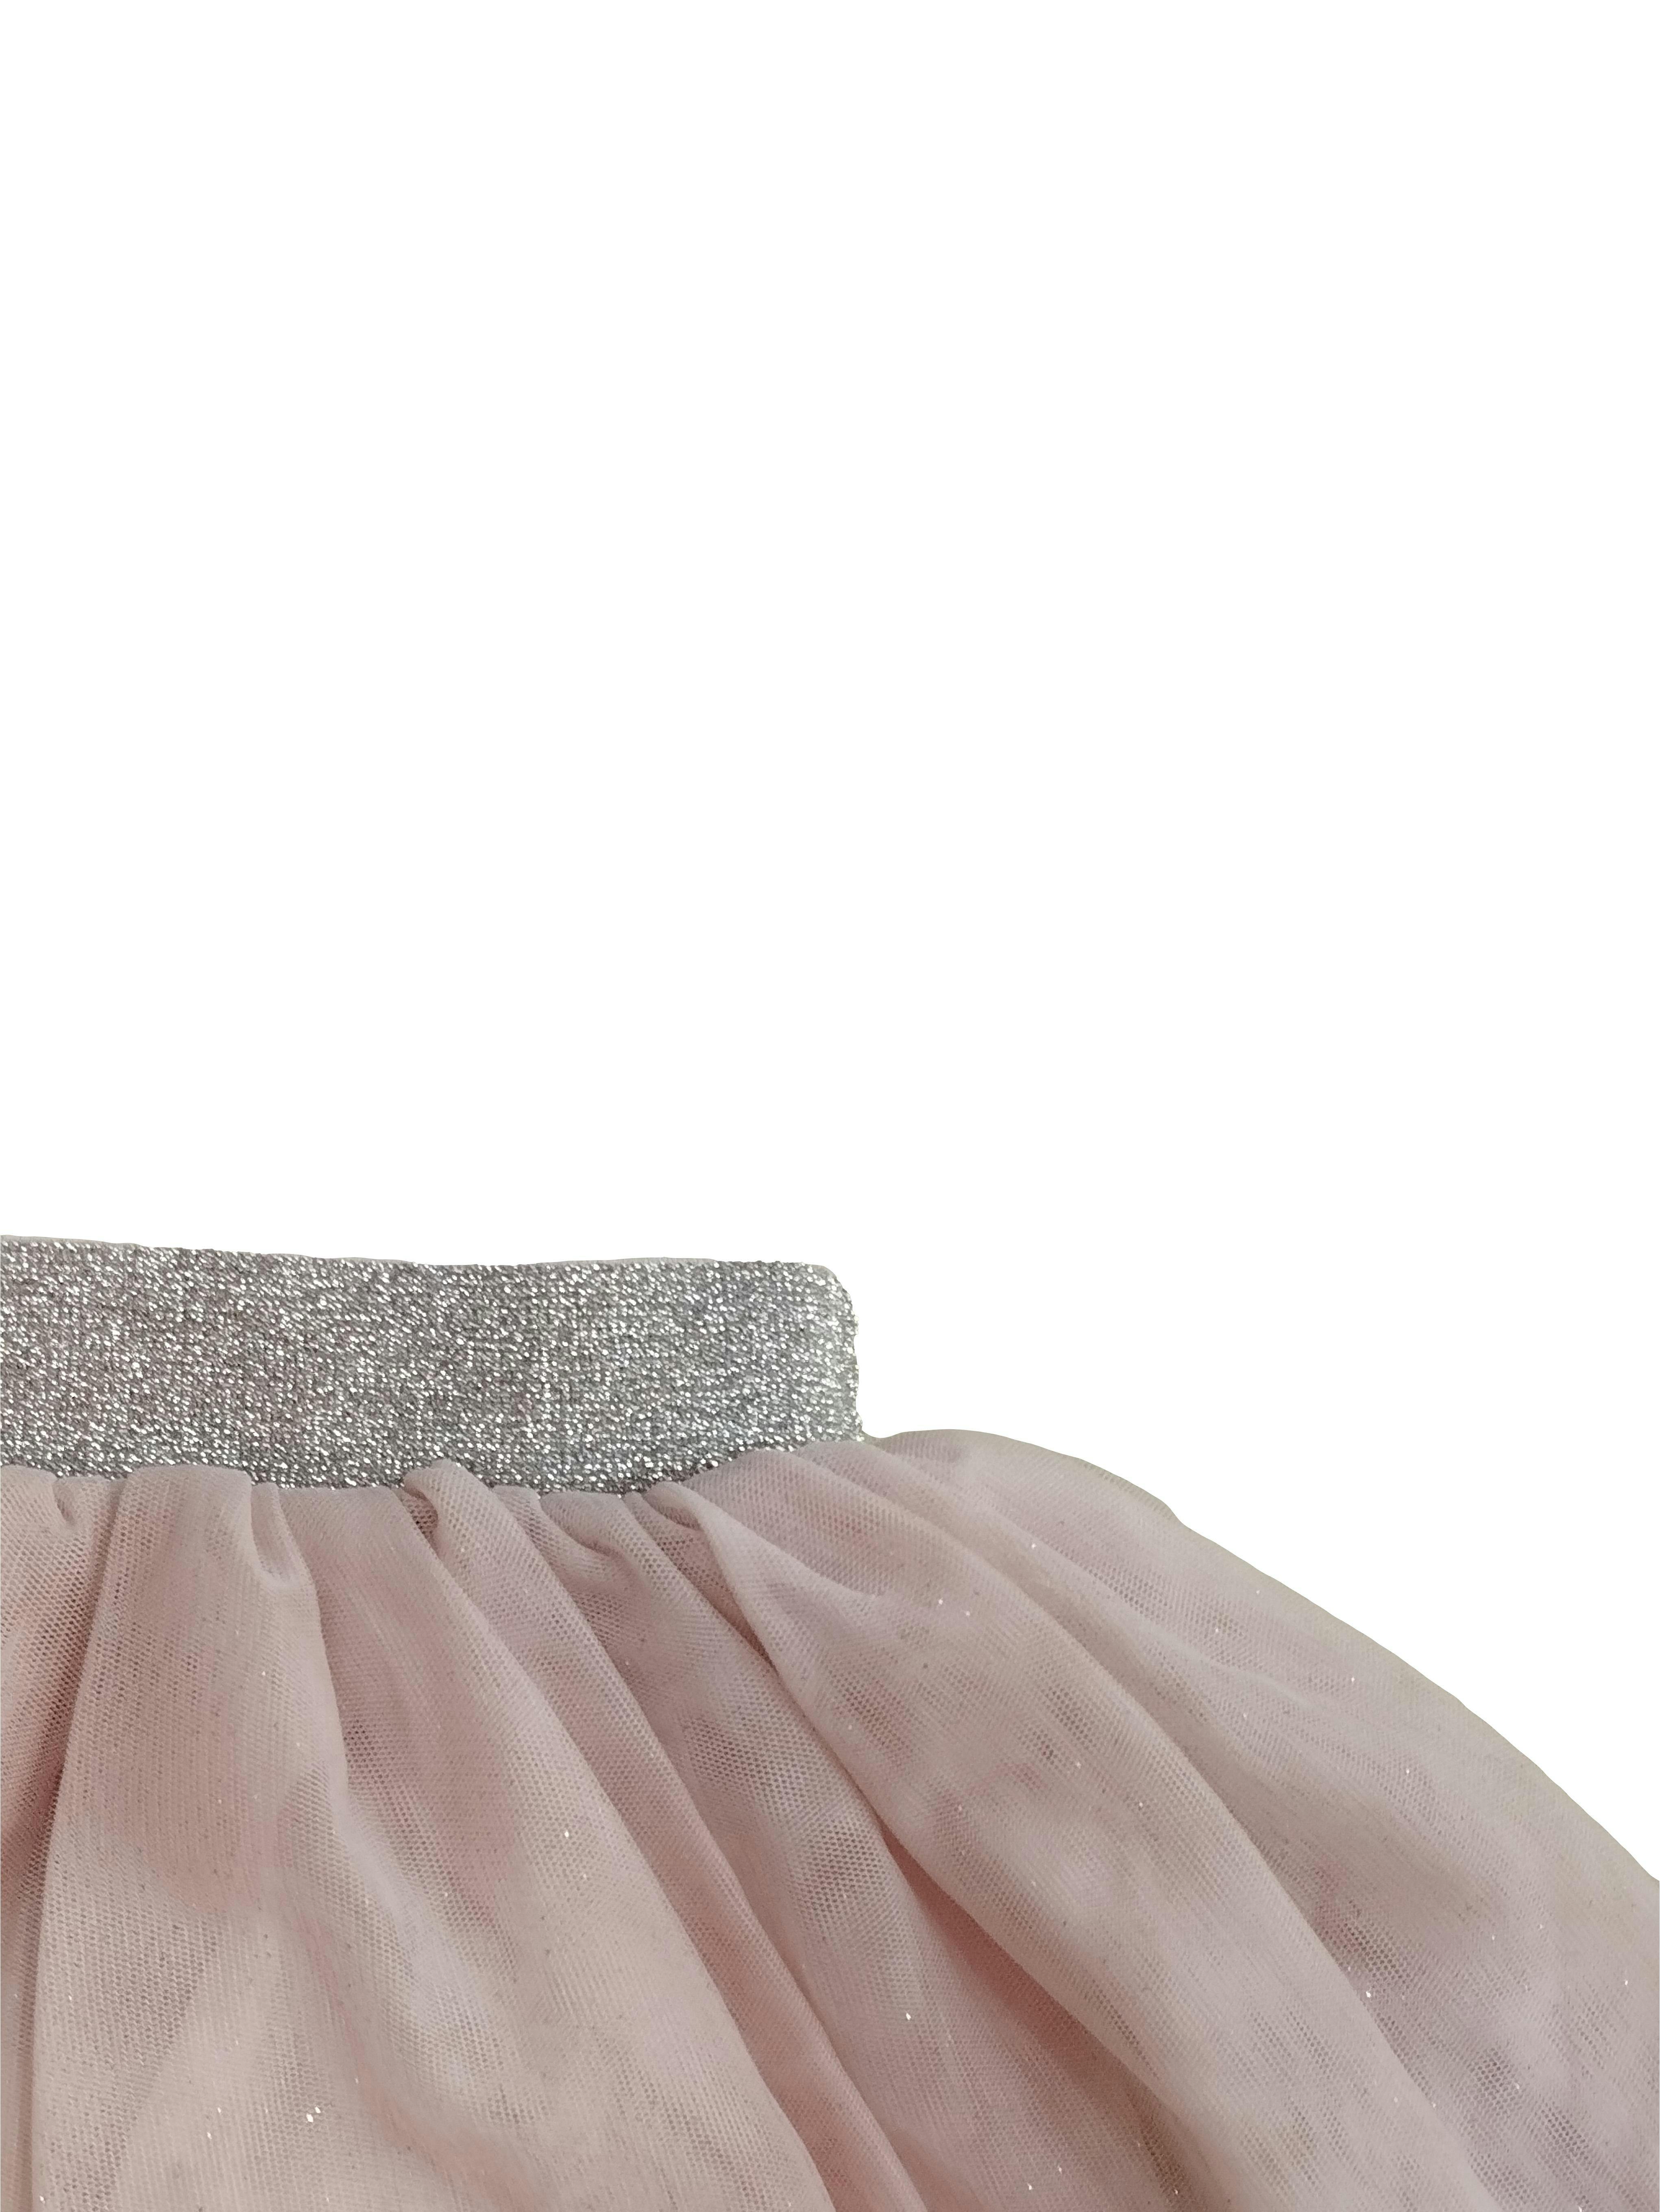 Falda Yamp de mesh rosa con forro, pequeños brillos, elástico plateado en la cintura. Cintura: 50 cm, Largo: 28 cm. Nuevo con etiqueta. SM